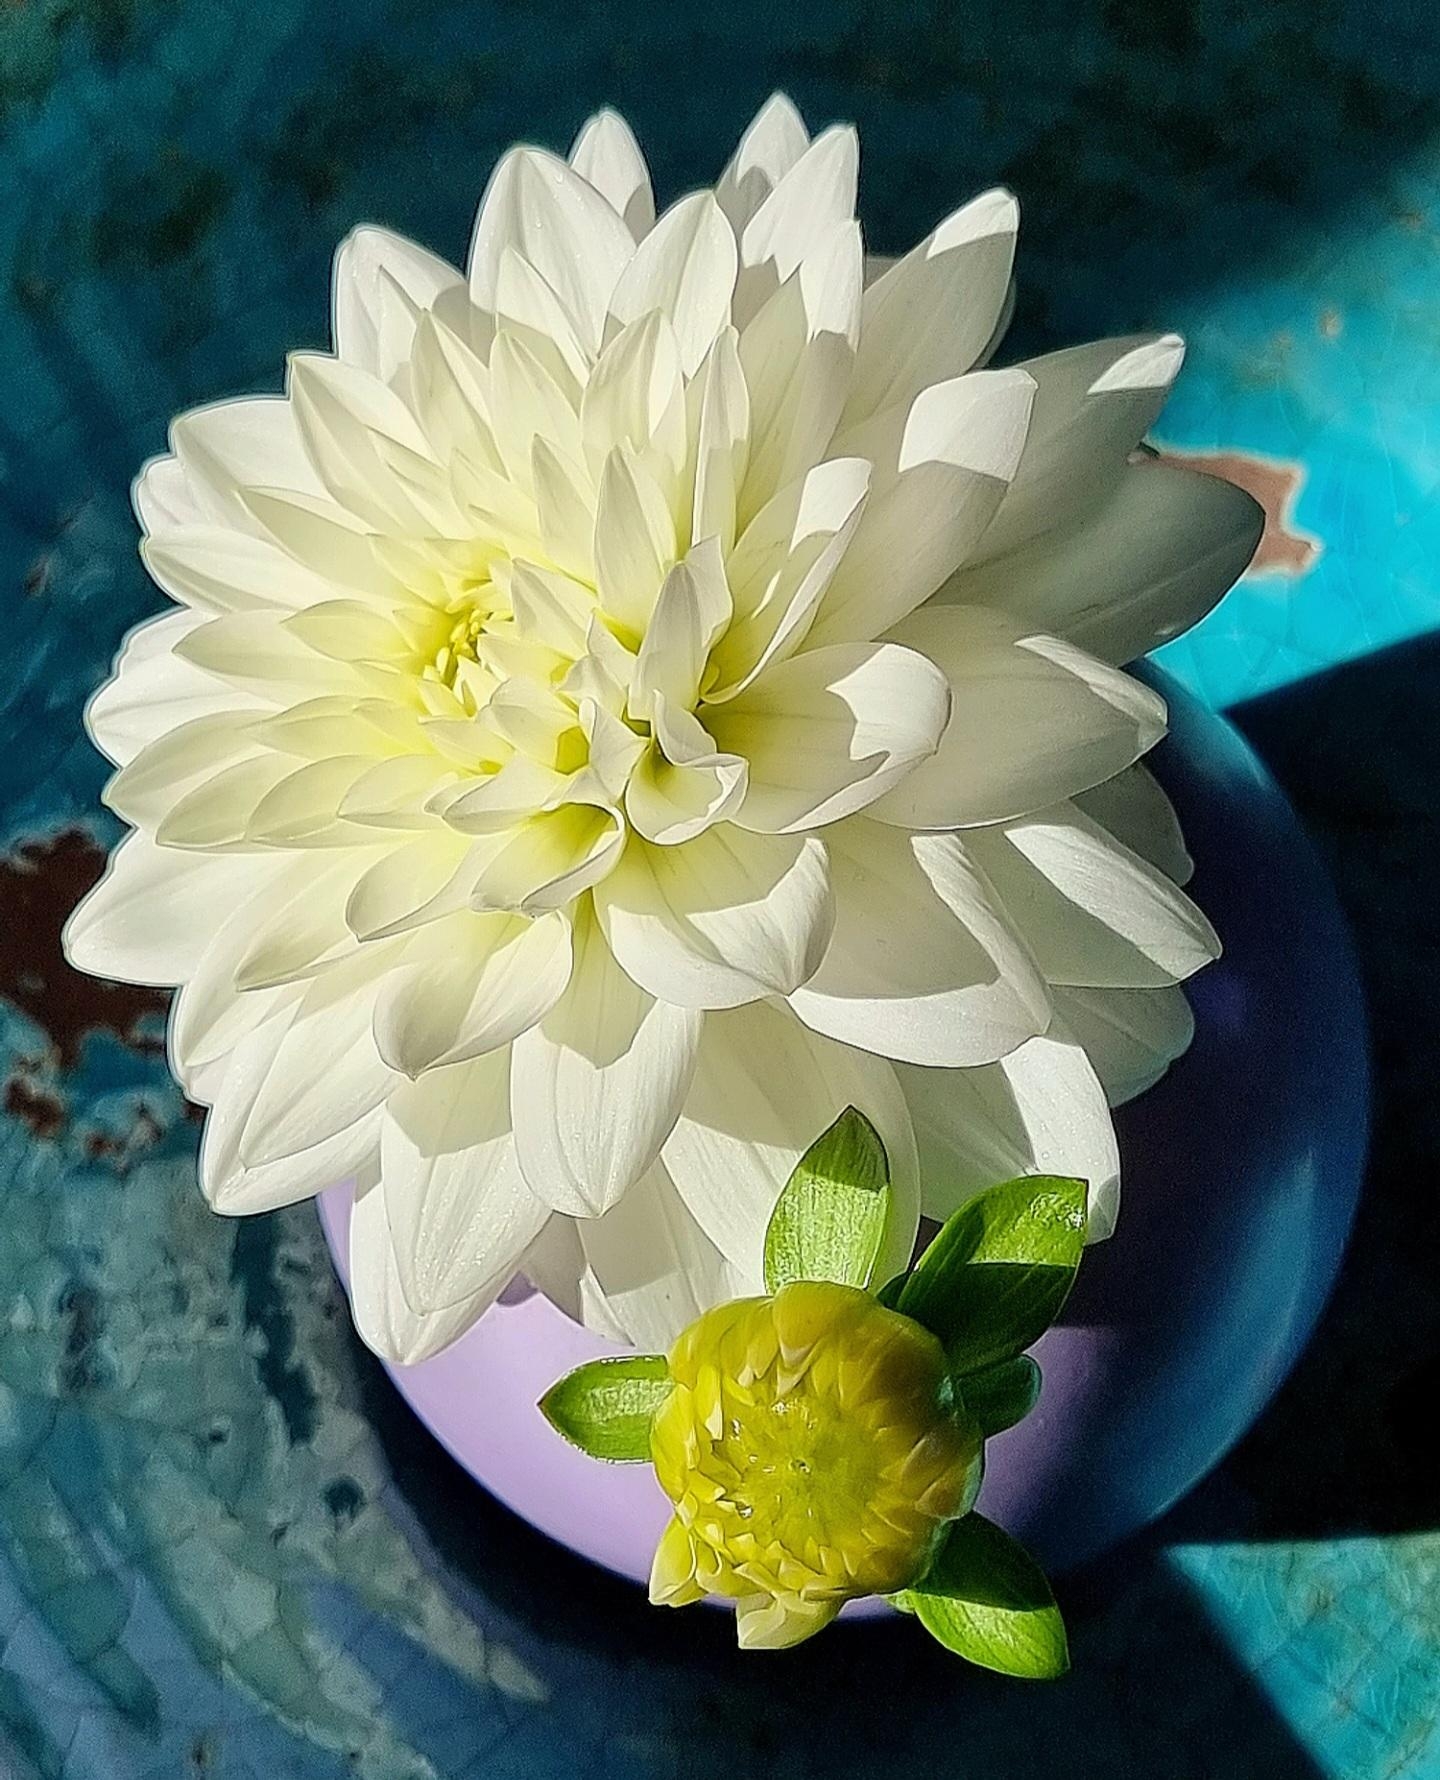 Wer liebt Dahlien auch so sehr? #freshflowerfriday im #Wohnzimmer #Blumen im #Sonnenschein #Farbenliebe #Vase 